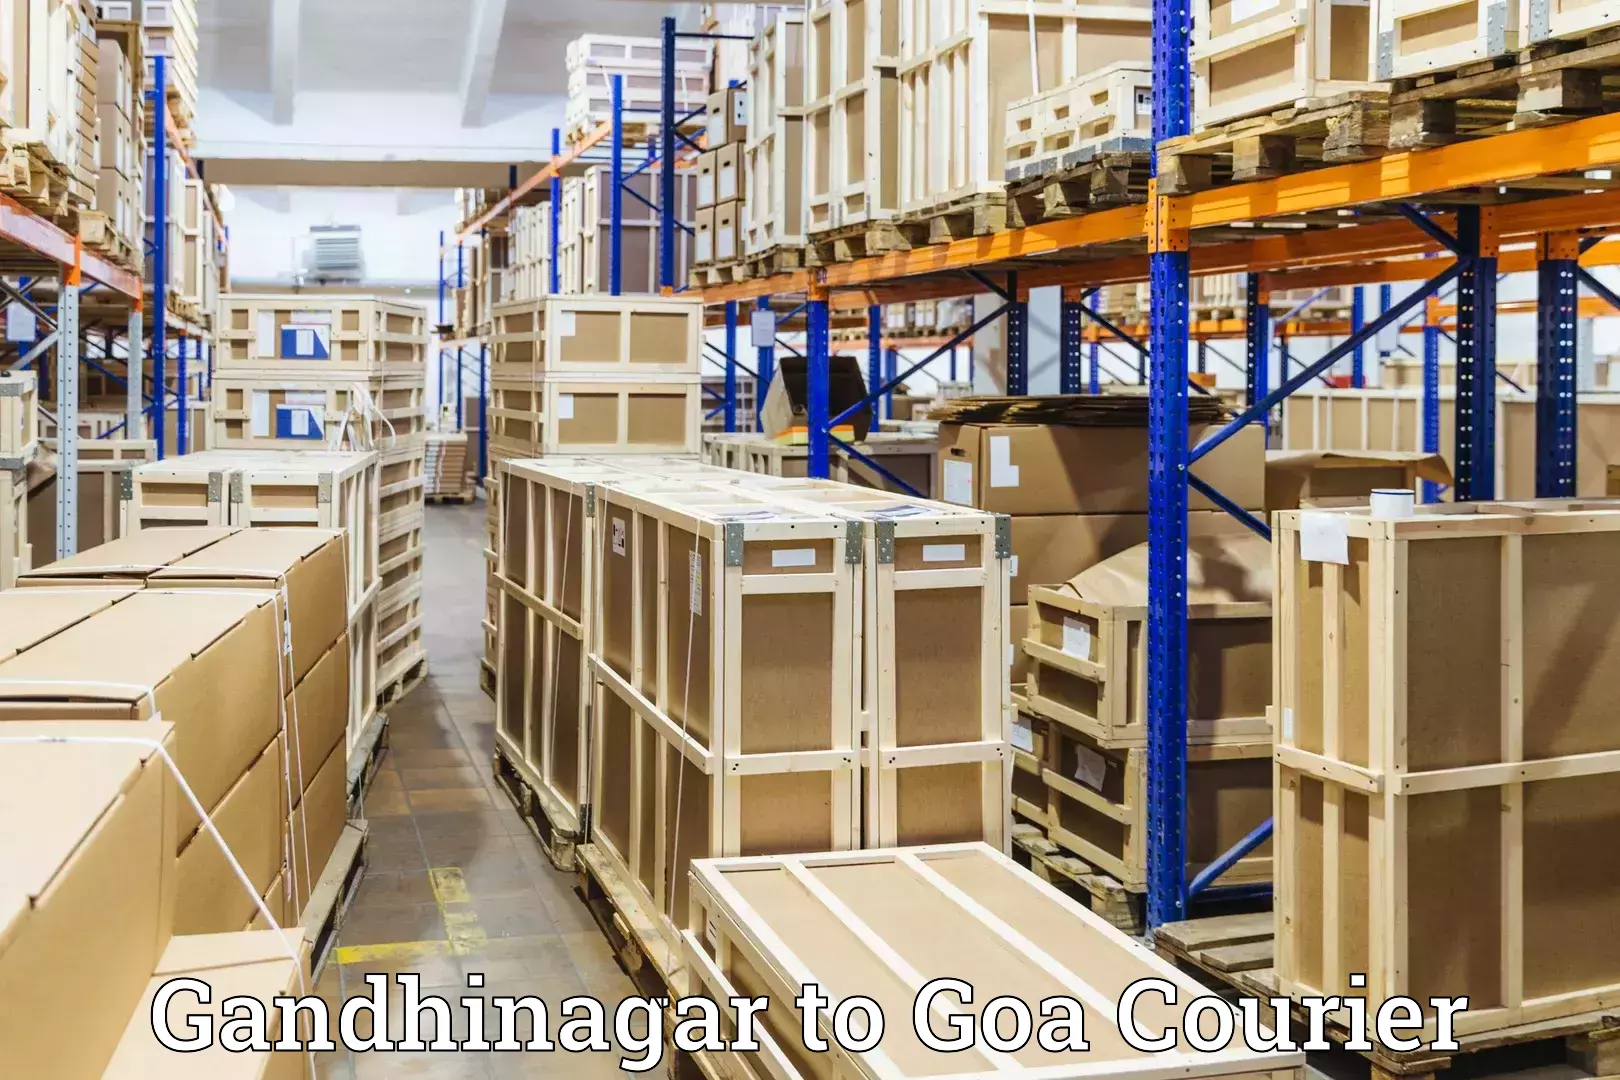 Luggage transport service Gandhinagar to Panjim